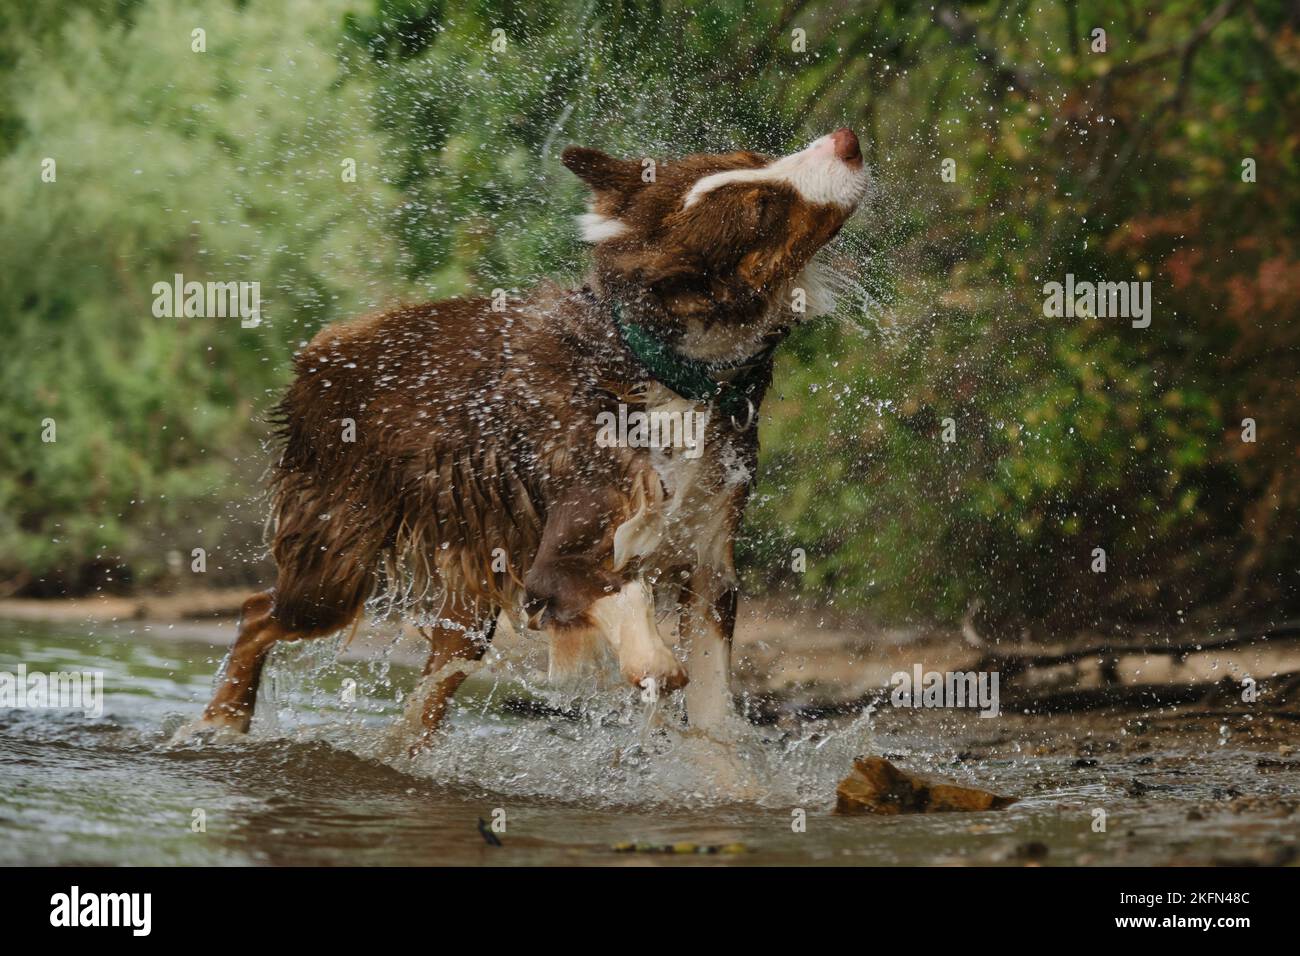 Australian Shepherd hat Spaß beim Schwimmen im Fluss im Sommer. Der Hund kam aus dem Wasser an Land und schüttelte ab, Spritzer flogen in verschiedene Richtungen. Aussie RE Stockfoto